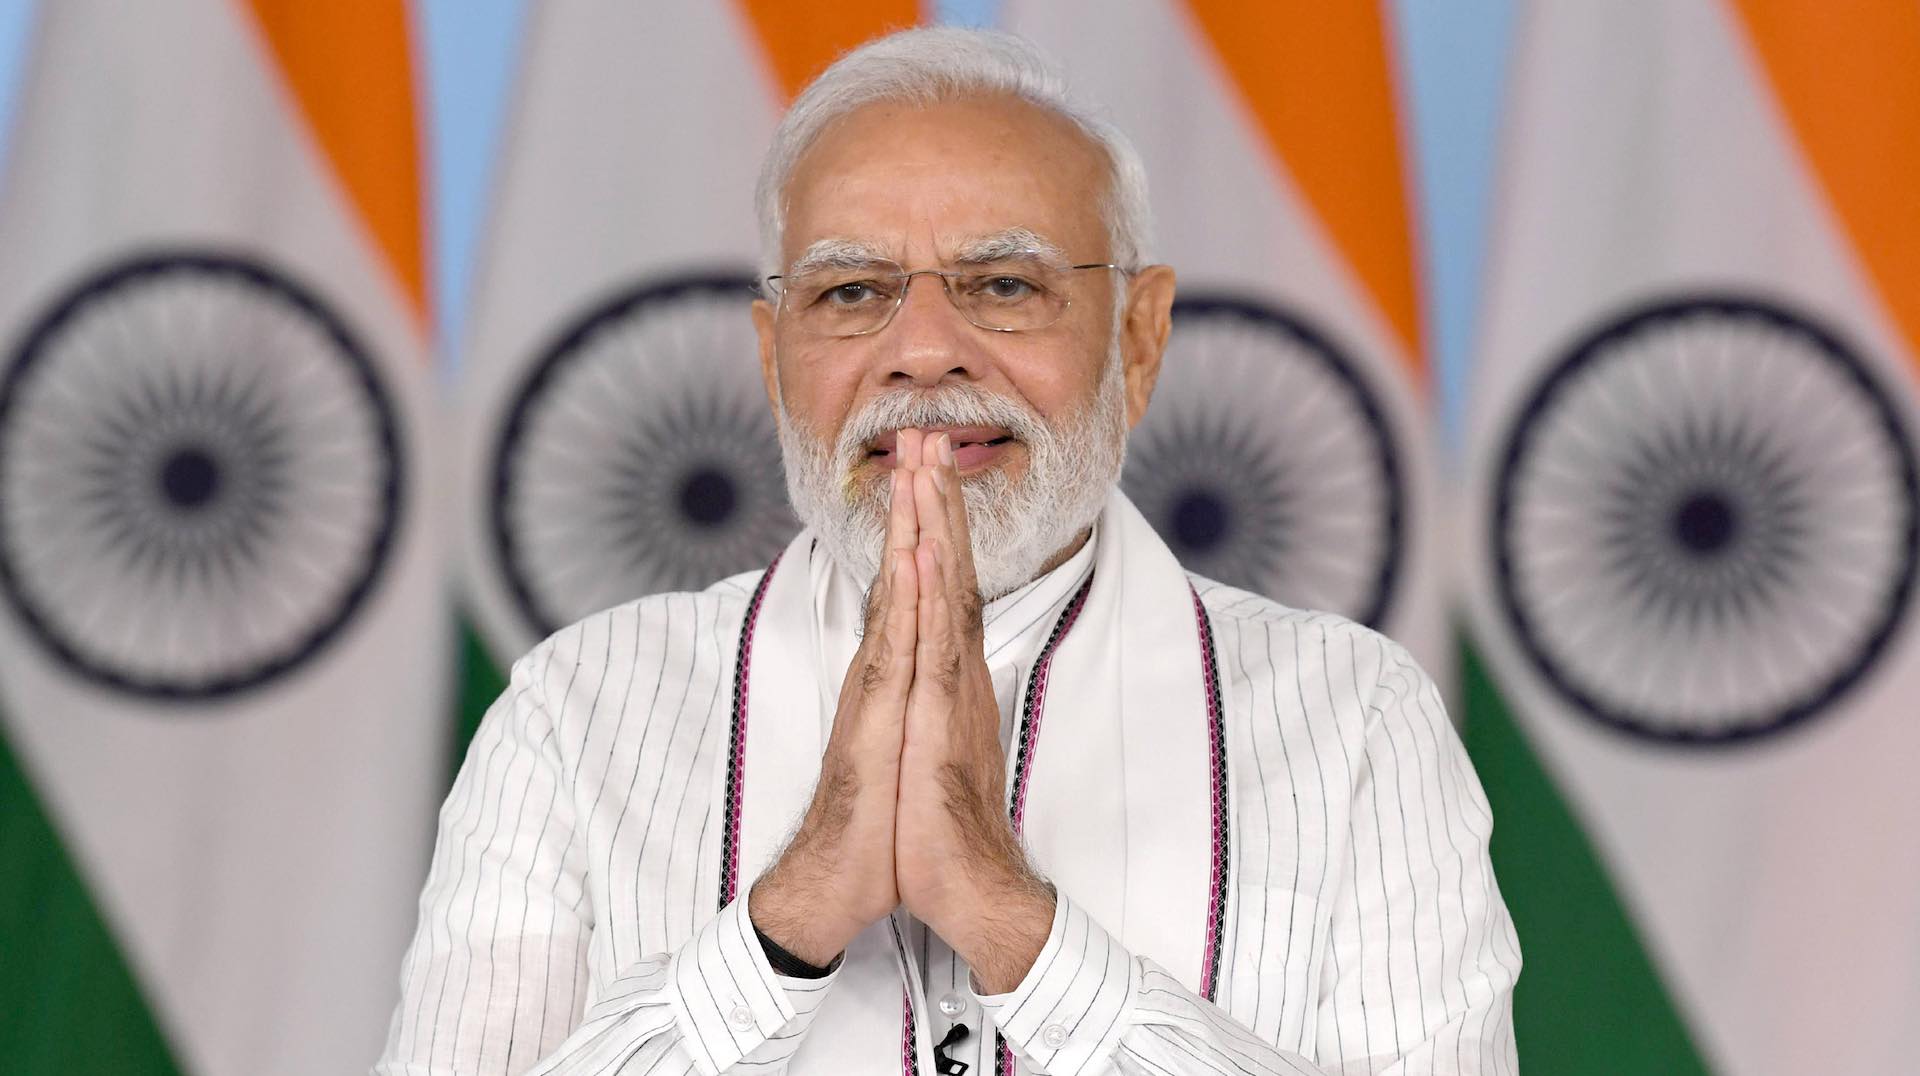 الهند تحقق نقلة نوعية نحو الريادة: تسع سنوات من الابتكار والتقدم تحت قيادة رئيس الوزراء ناريندرا مودي